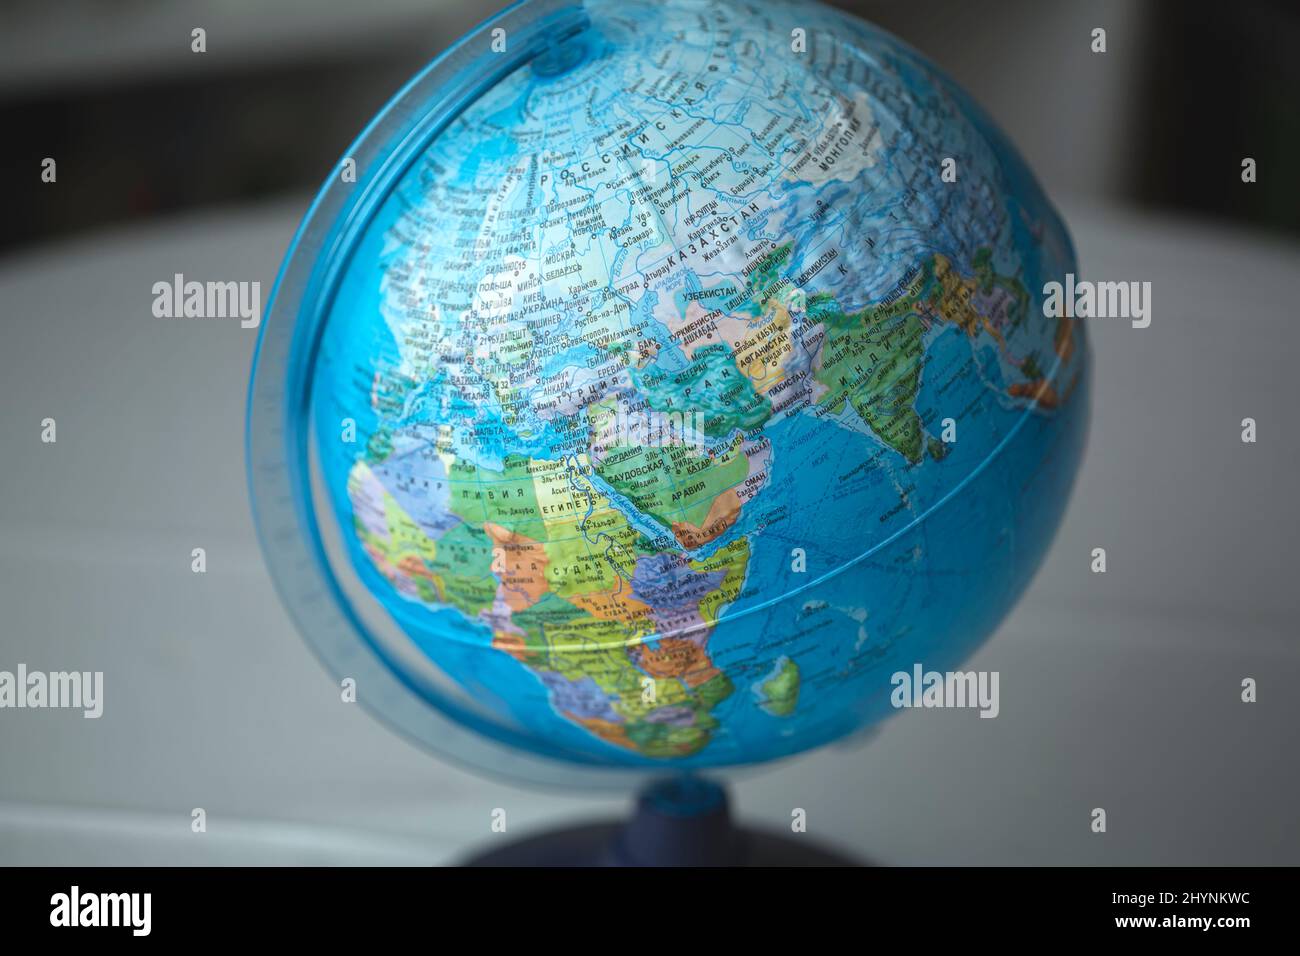 Mappa in lingua russa sul globo da tavola. Russia, kazakistan, eurasia Foto Stock